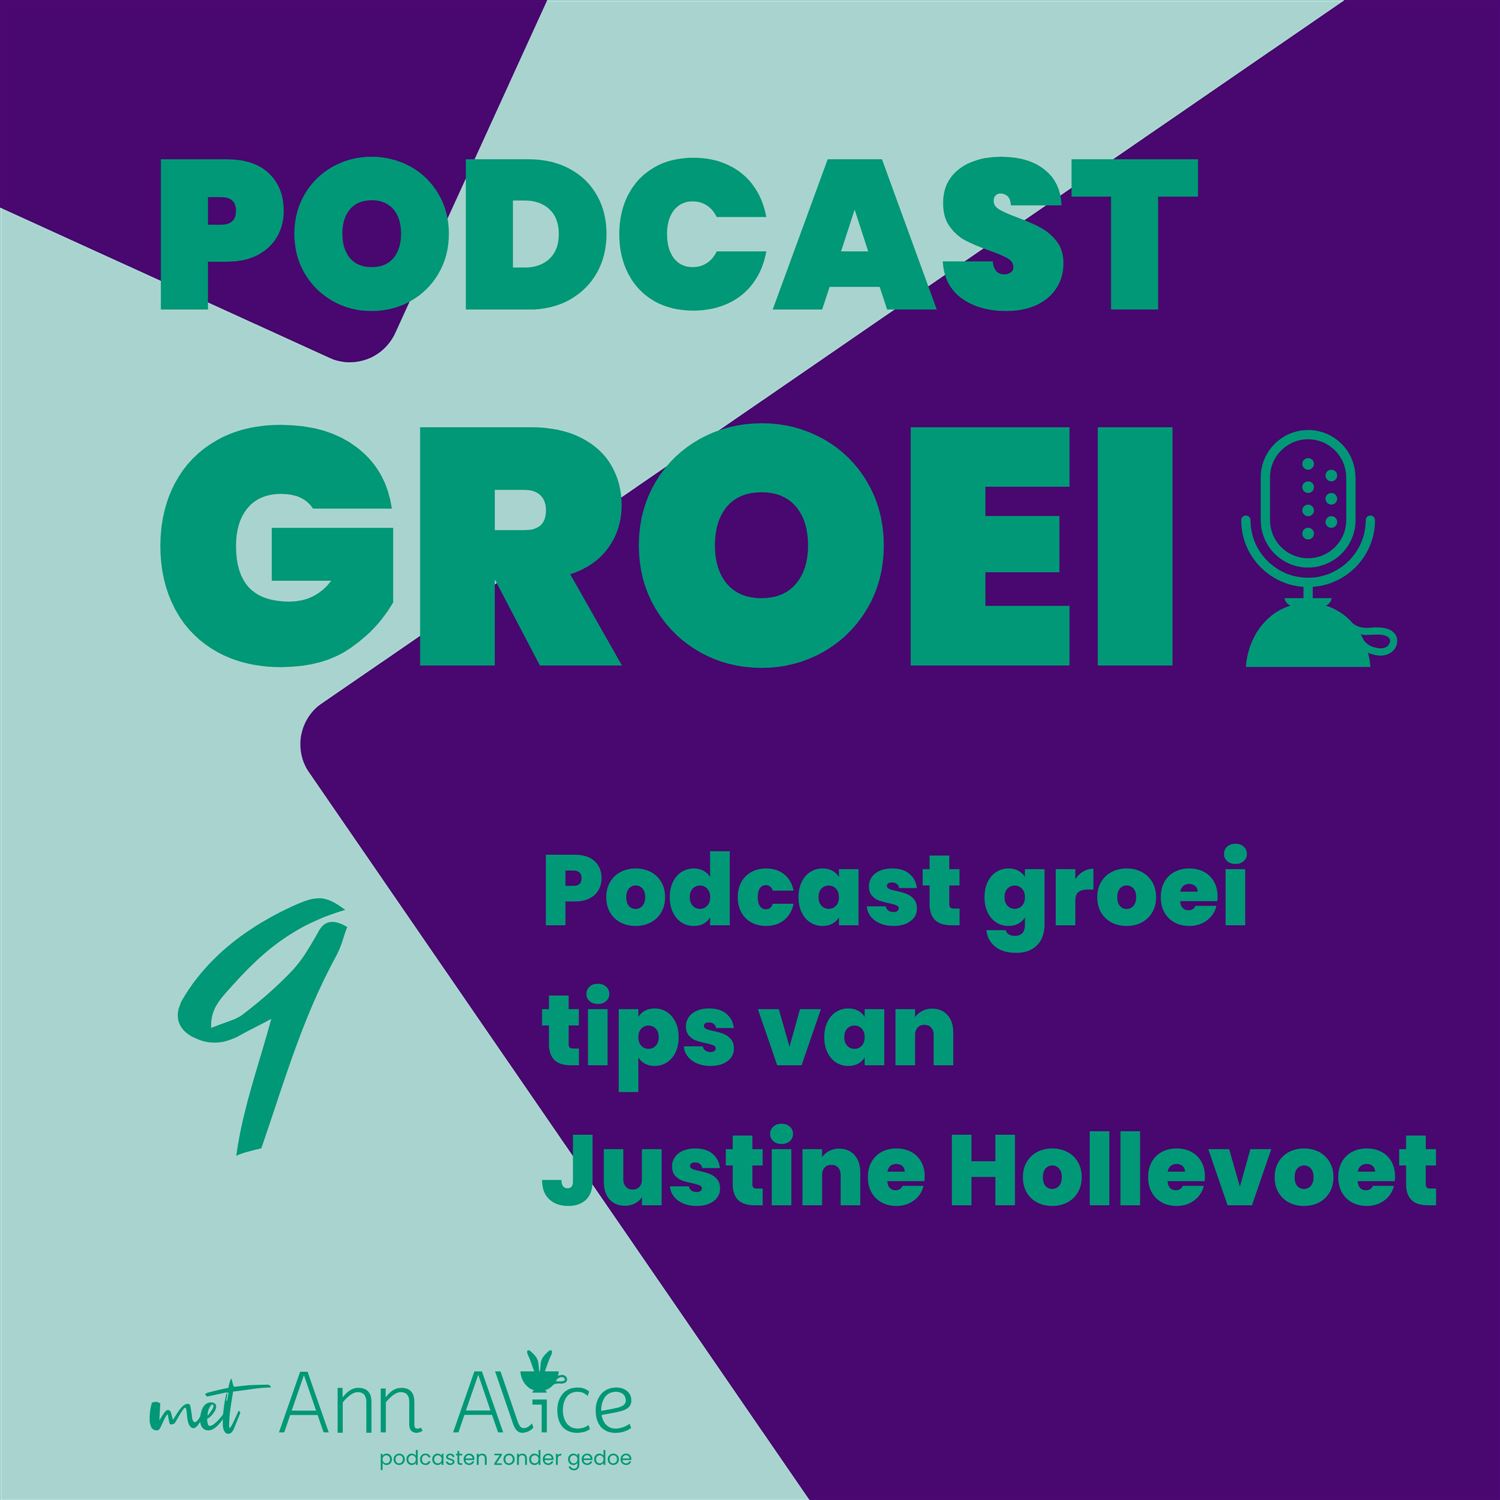 9. Podcast groei tips van Justine Hollevoet